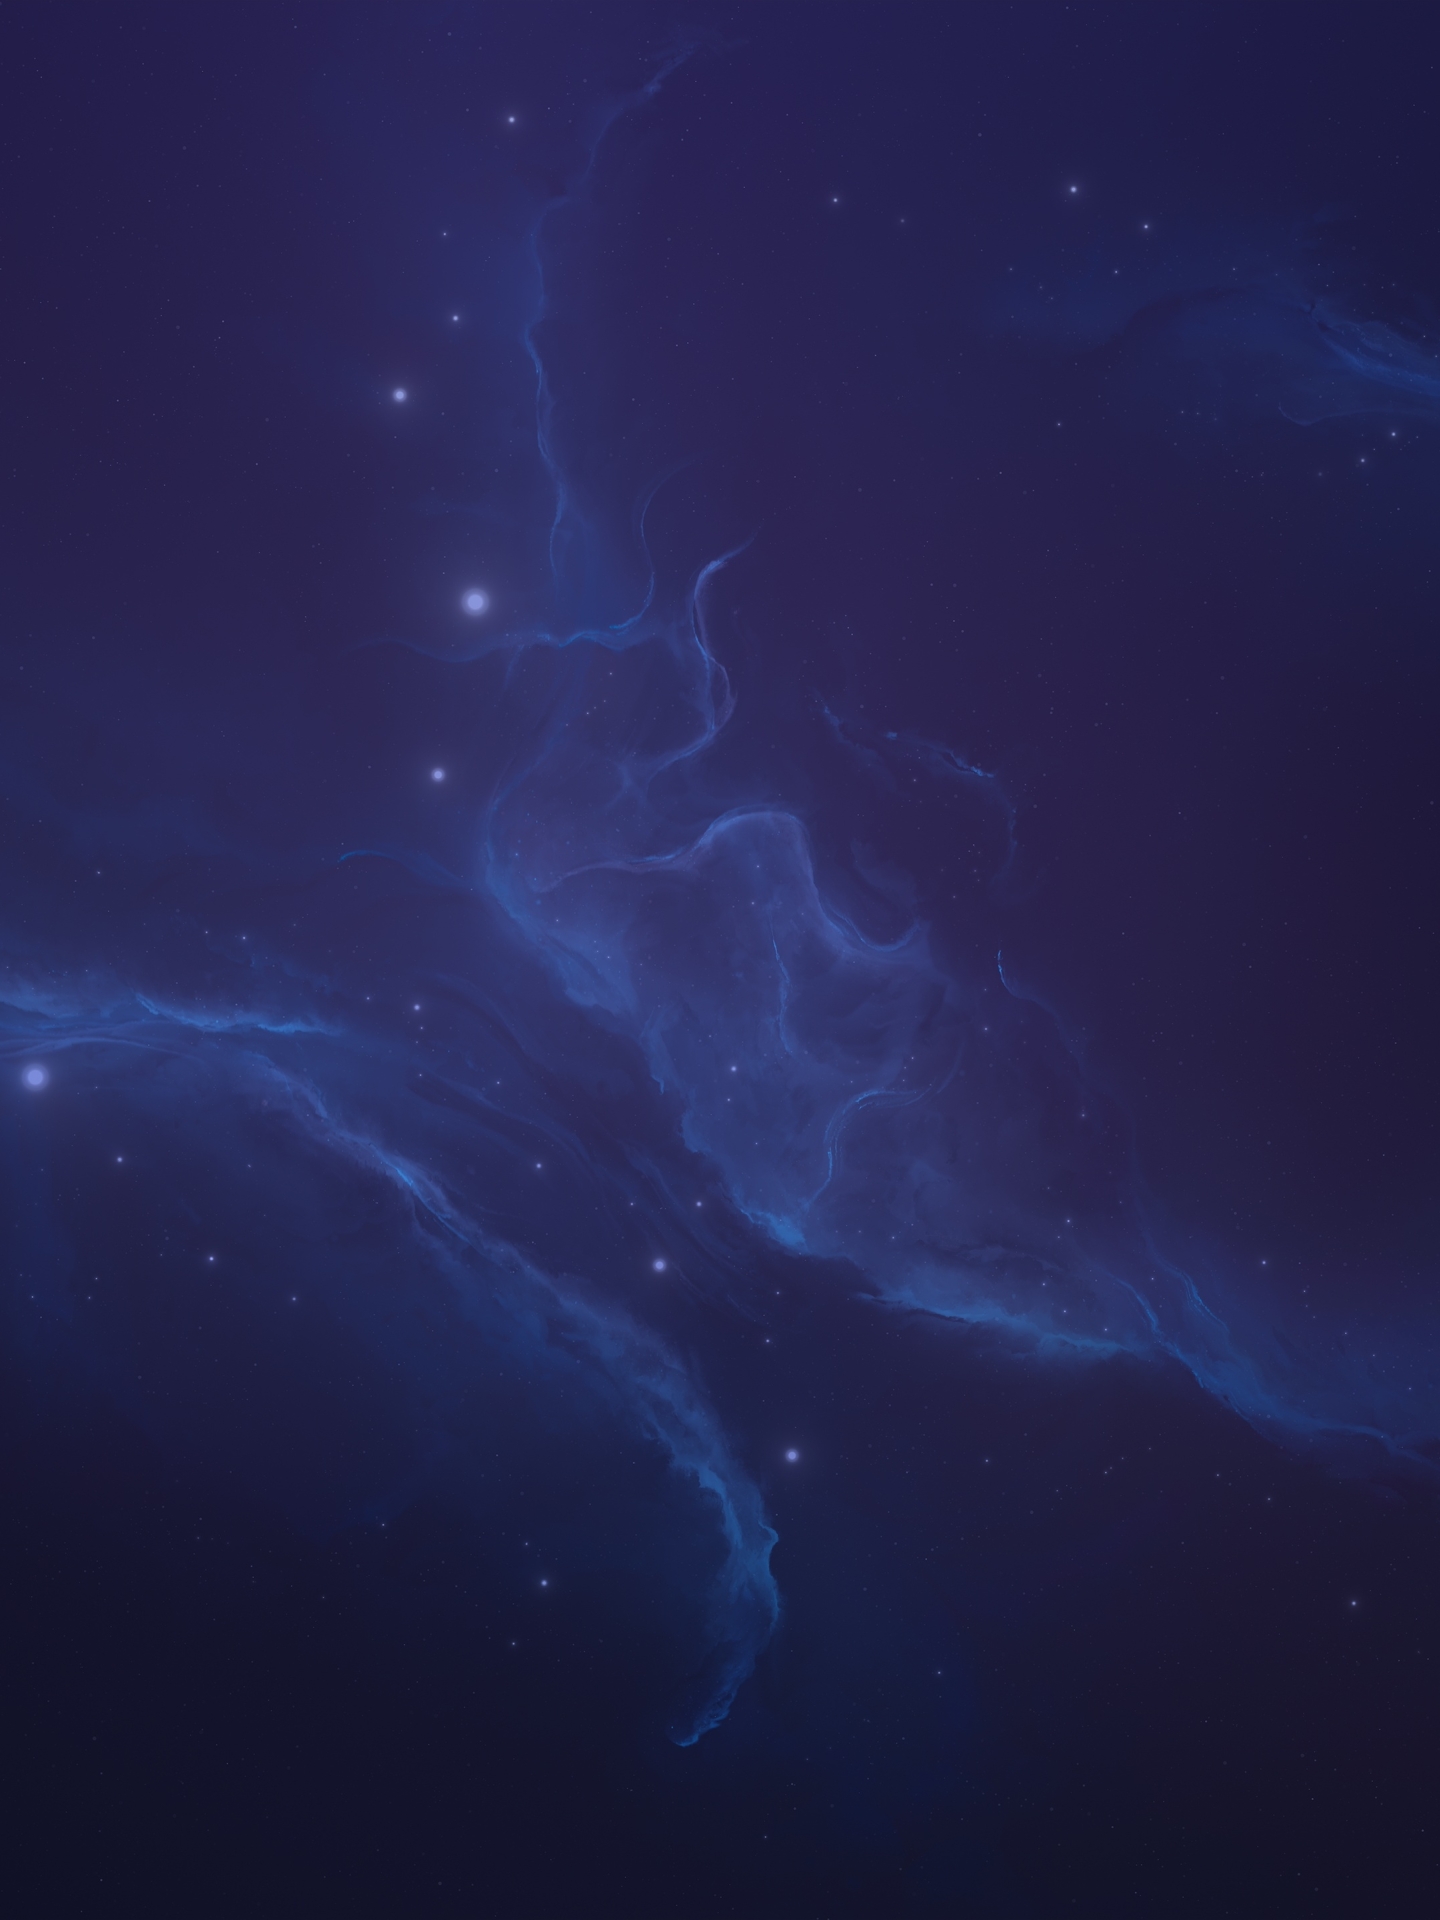 1440x1920 Blue Eden Nebula Art 1440x1920 Resolution Wallpaper, HD Space ...